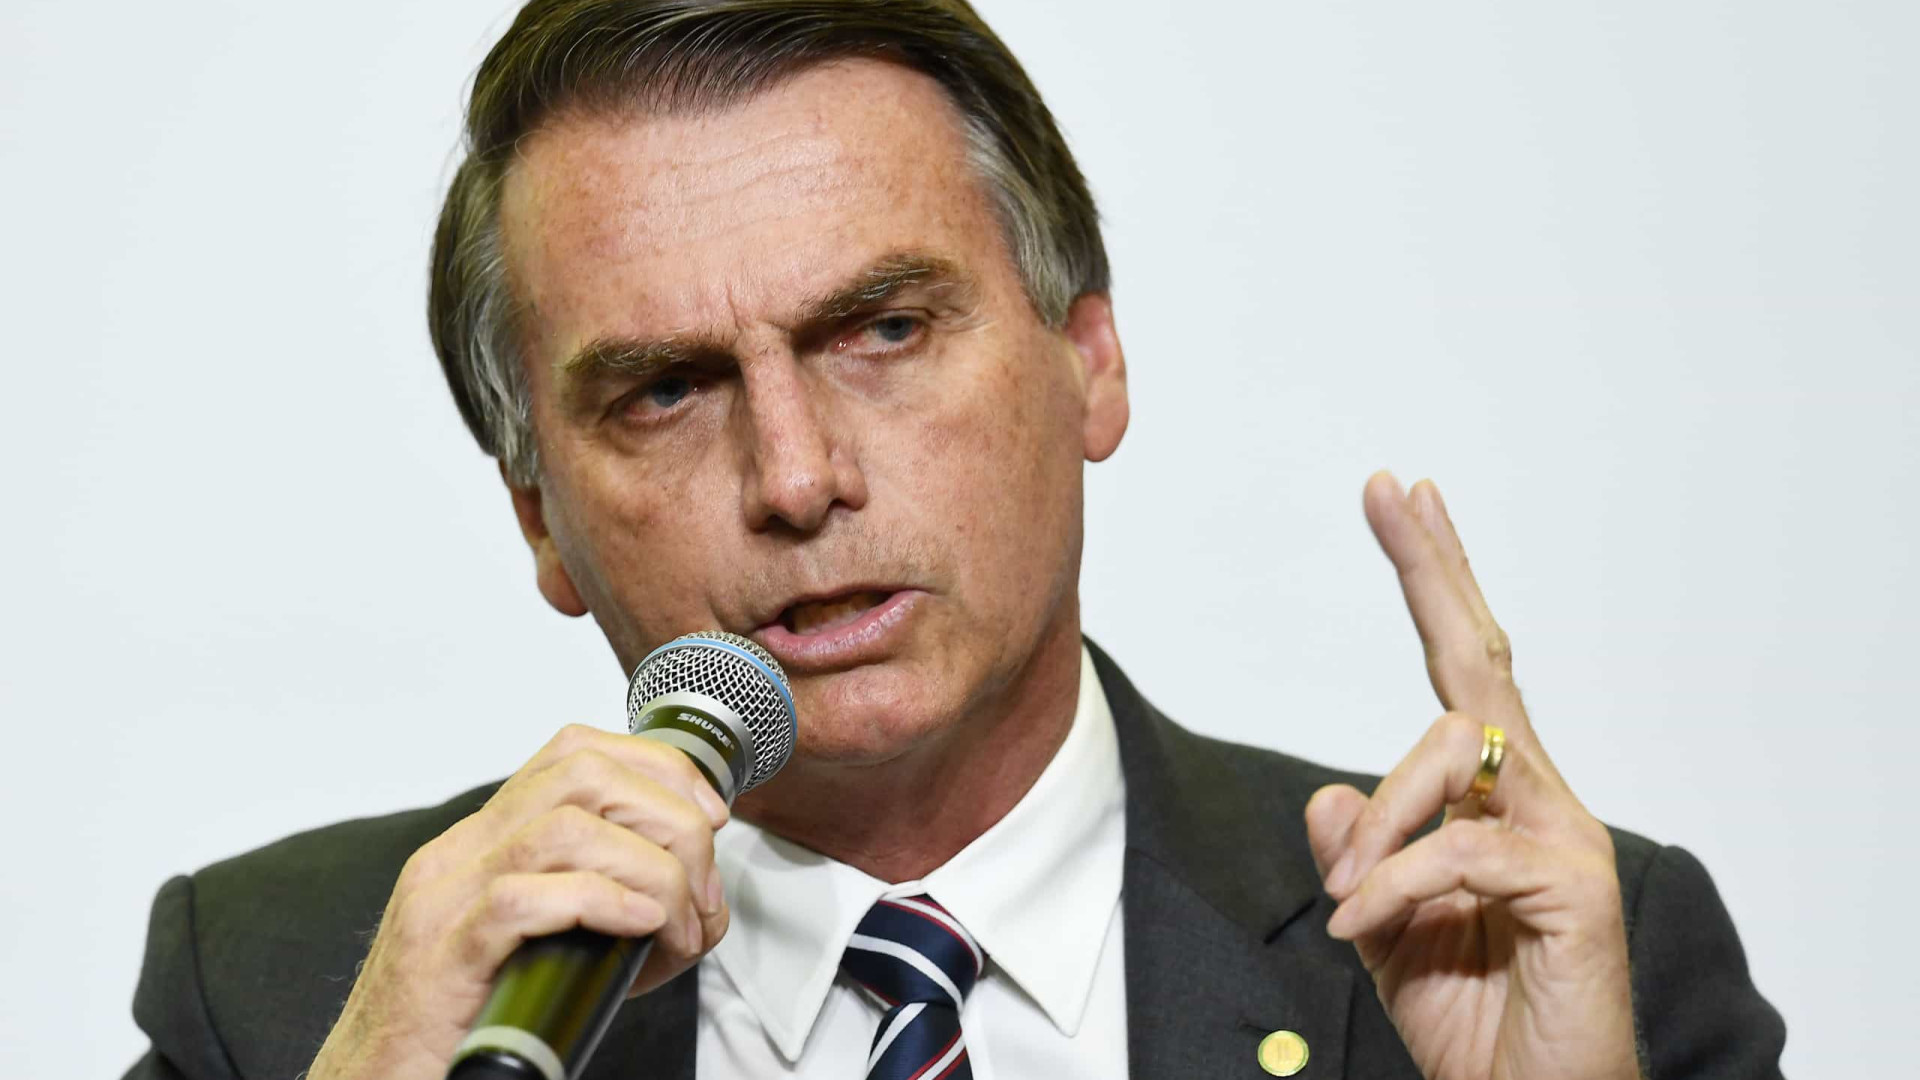 Bolsonaro: alguém do Supremo não pode falar não gosto de arma vou revogar isenção